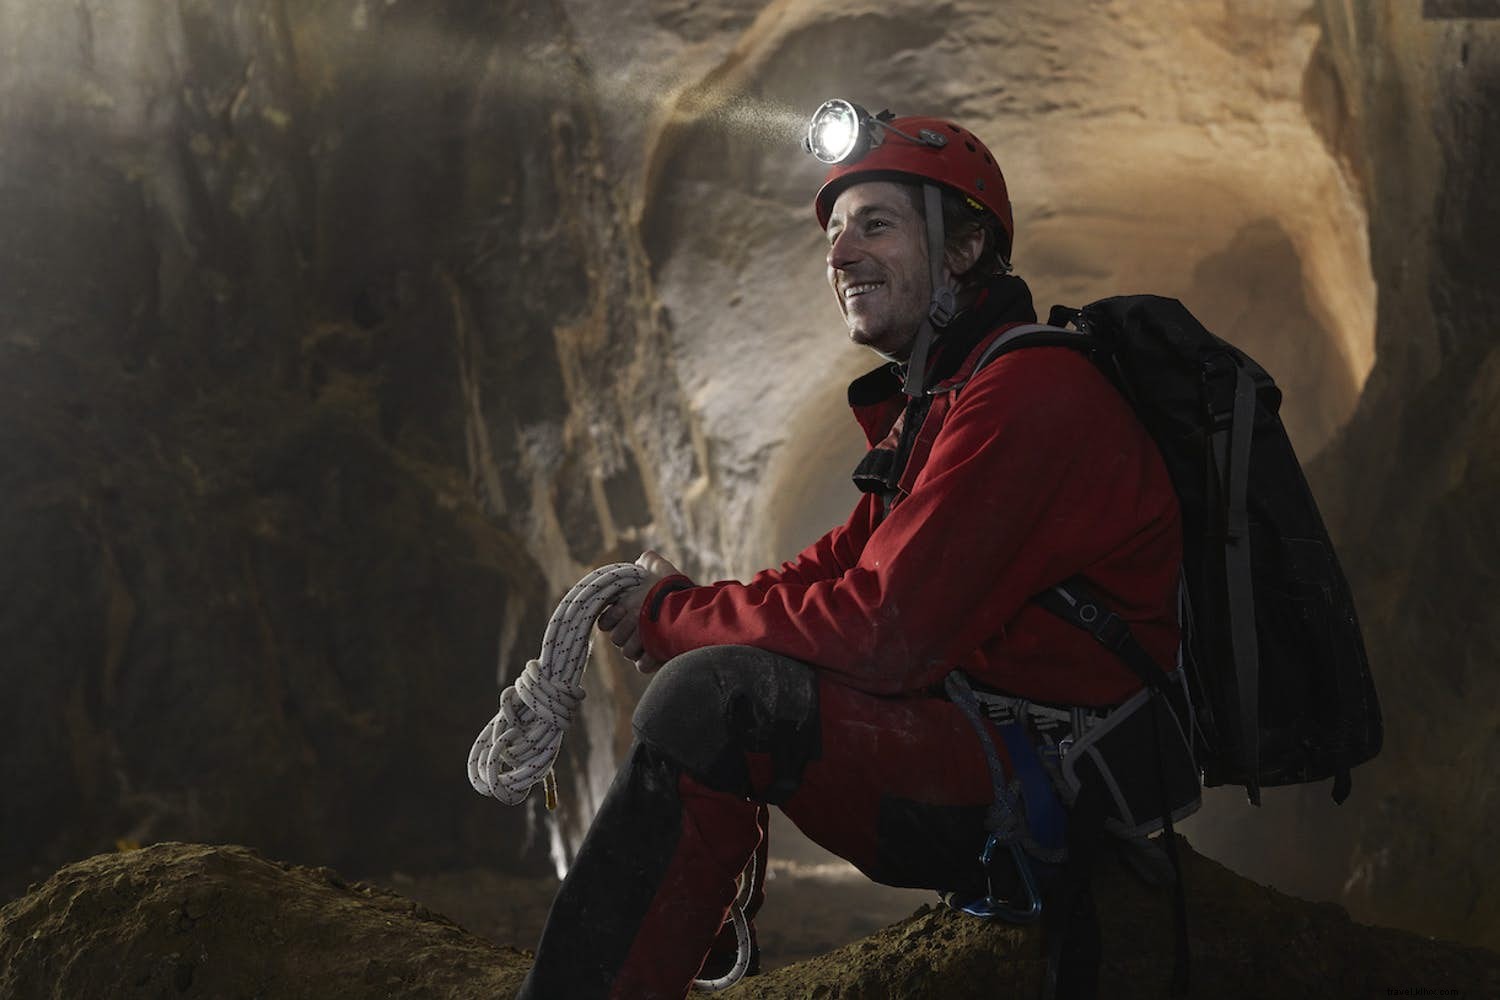 Conoce a un viajero:Robbie Shone, explorador de cuevas y fotógrafo 